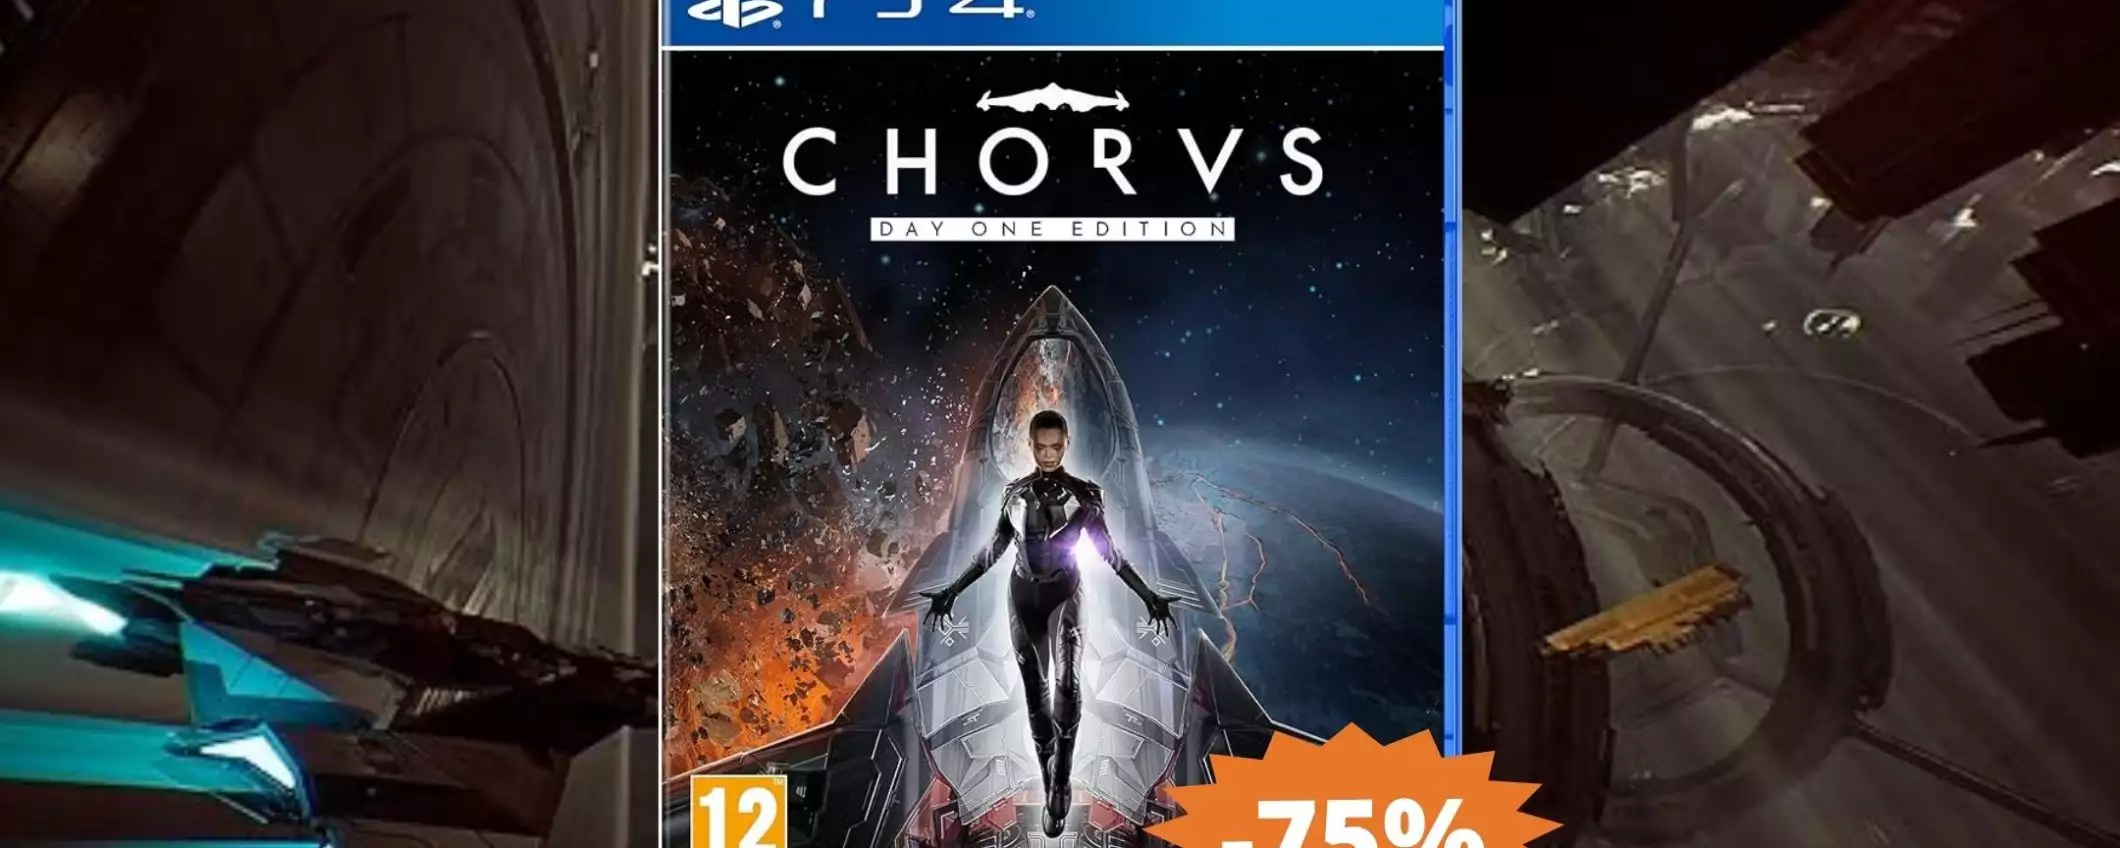 Chorus Day One Edition per PS4: sconto FOLLE del 75% su Amazon